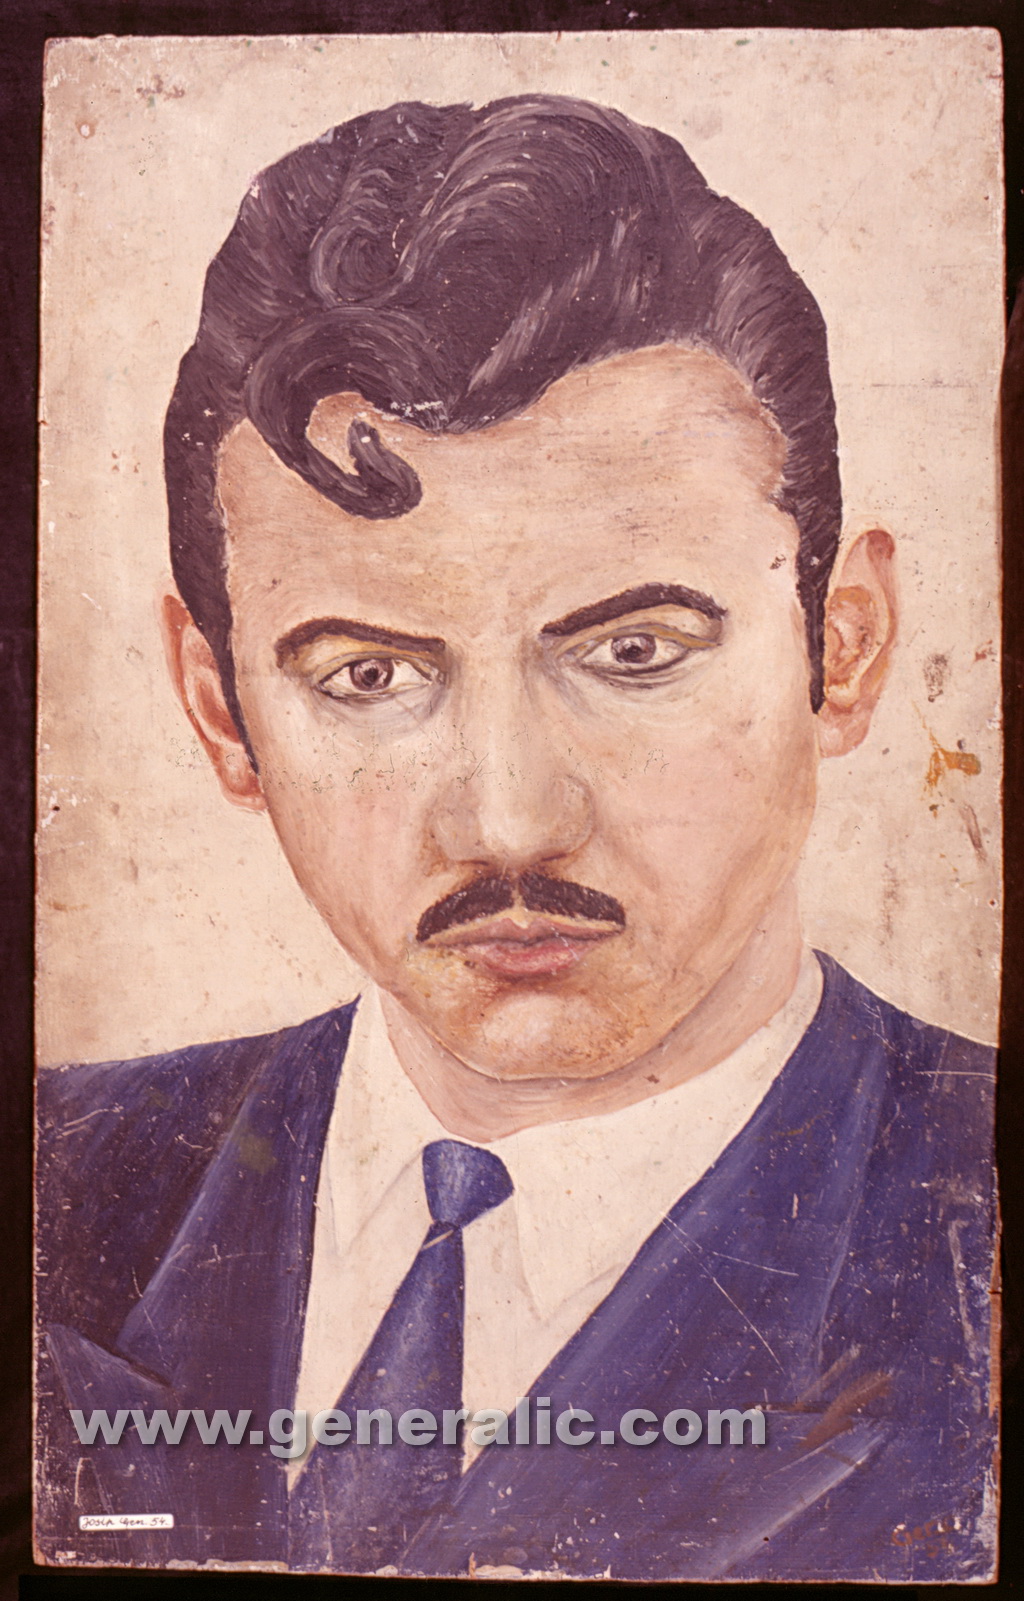 Josip Generalic, 1954, Self portrait, oil on wood